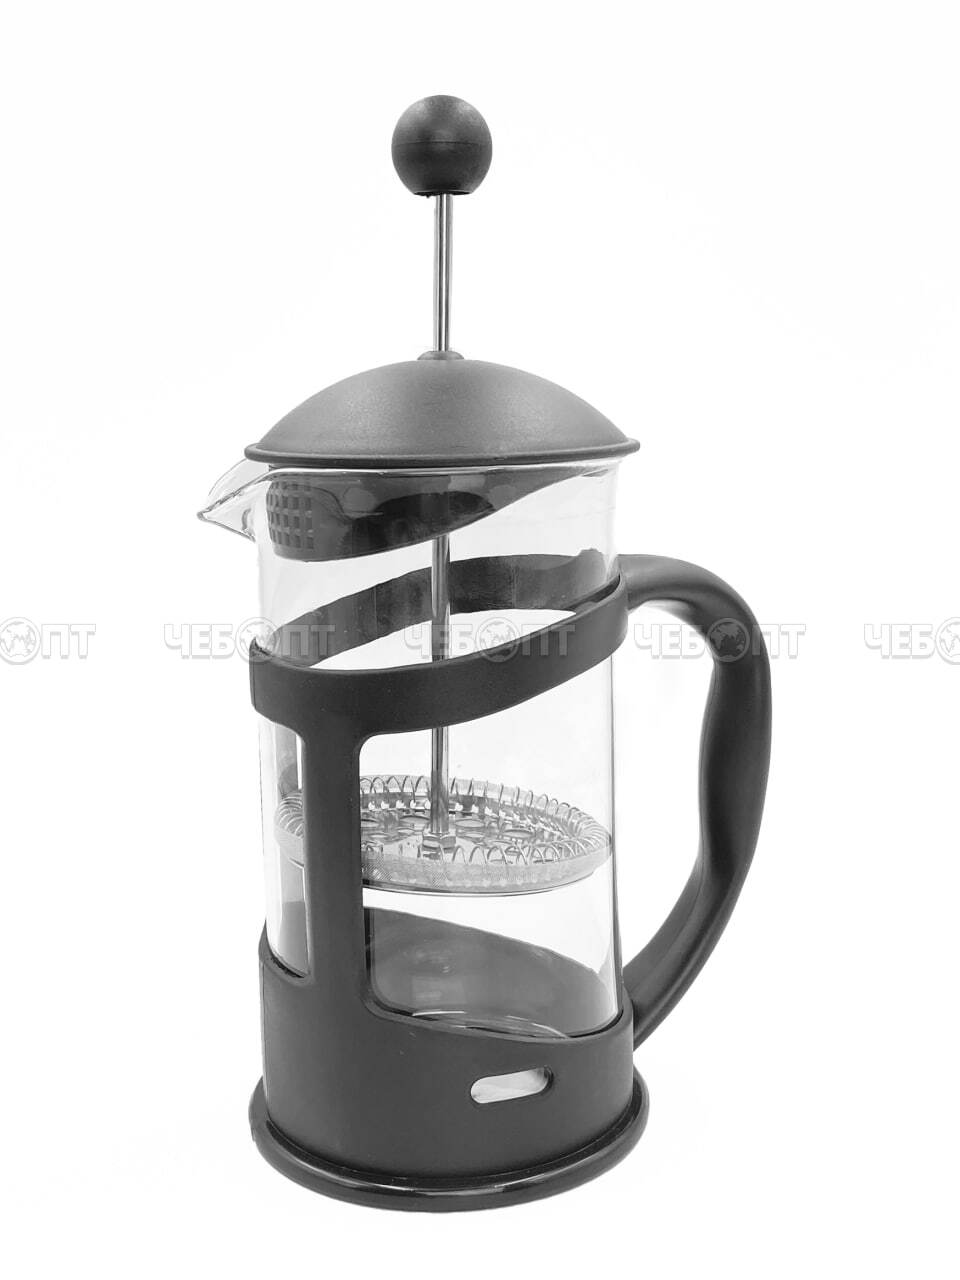 Чайник / кофейник френч-пресс 600 мл MYC-2 жаропрочное стекло, корпус пластмассовый, стальной фильтр арт. 260156 $ [40] GOODSEE. ЧЕБОПТ.